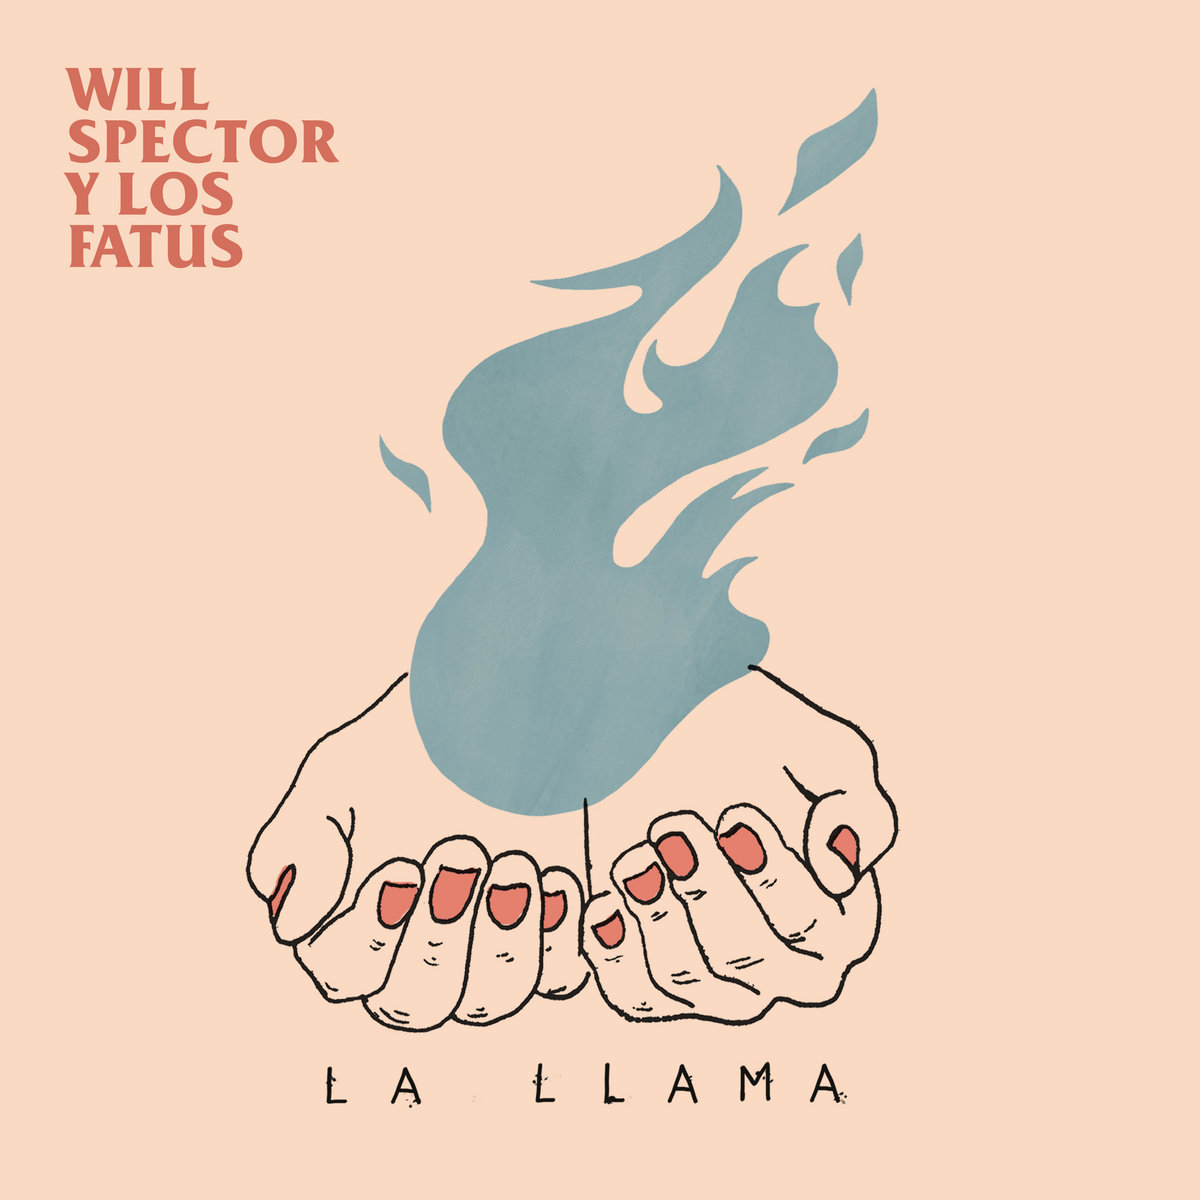 Will Spector y Los Fatus "La Llama" LP